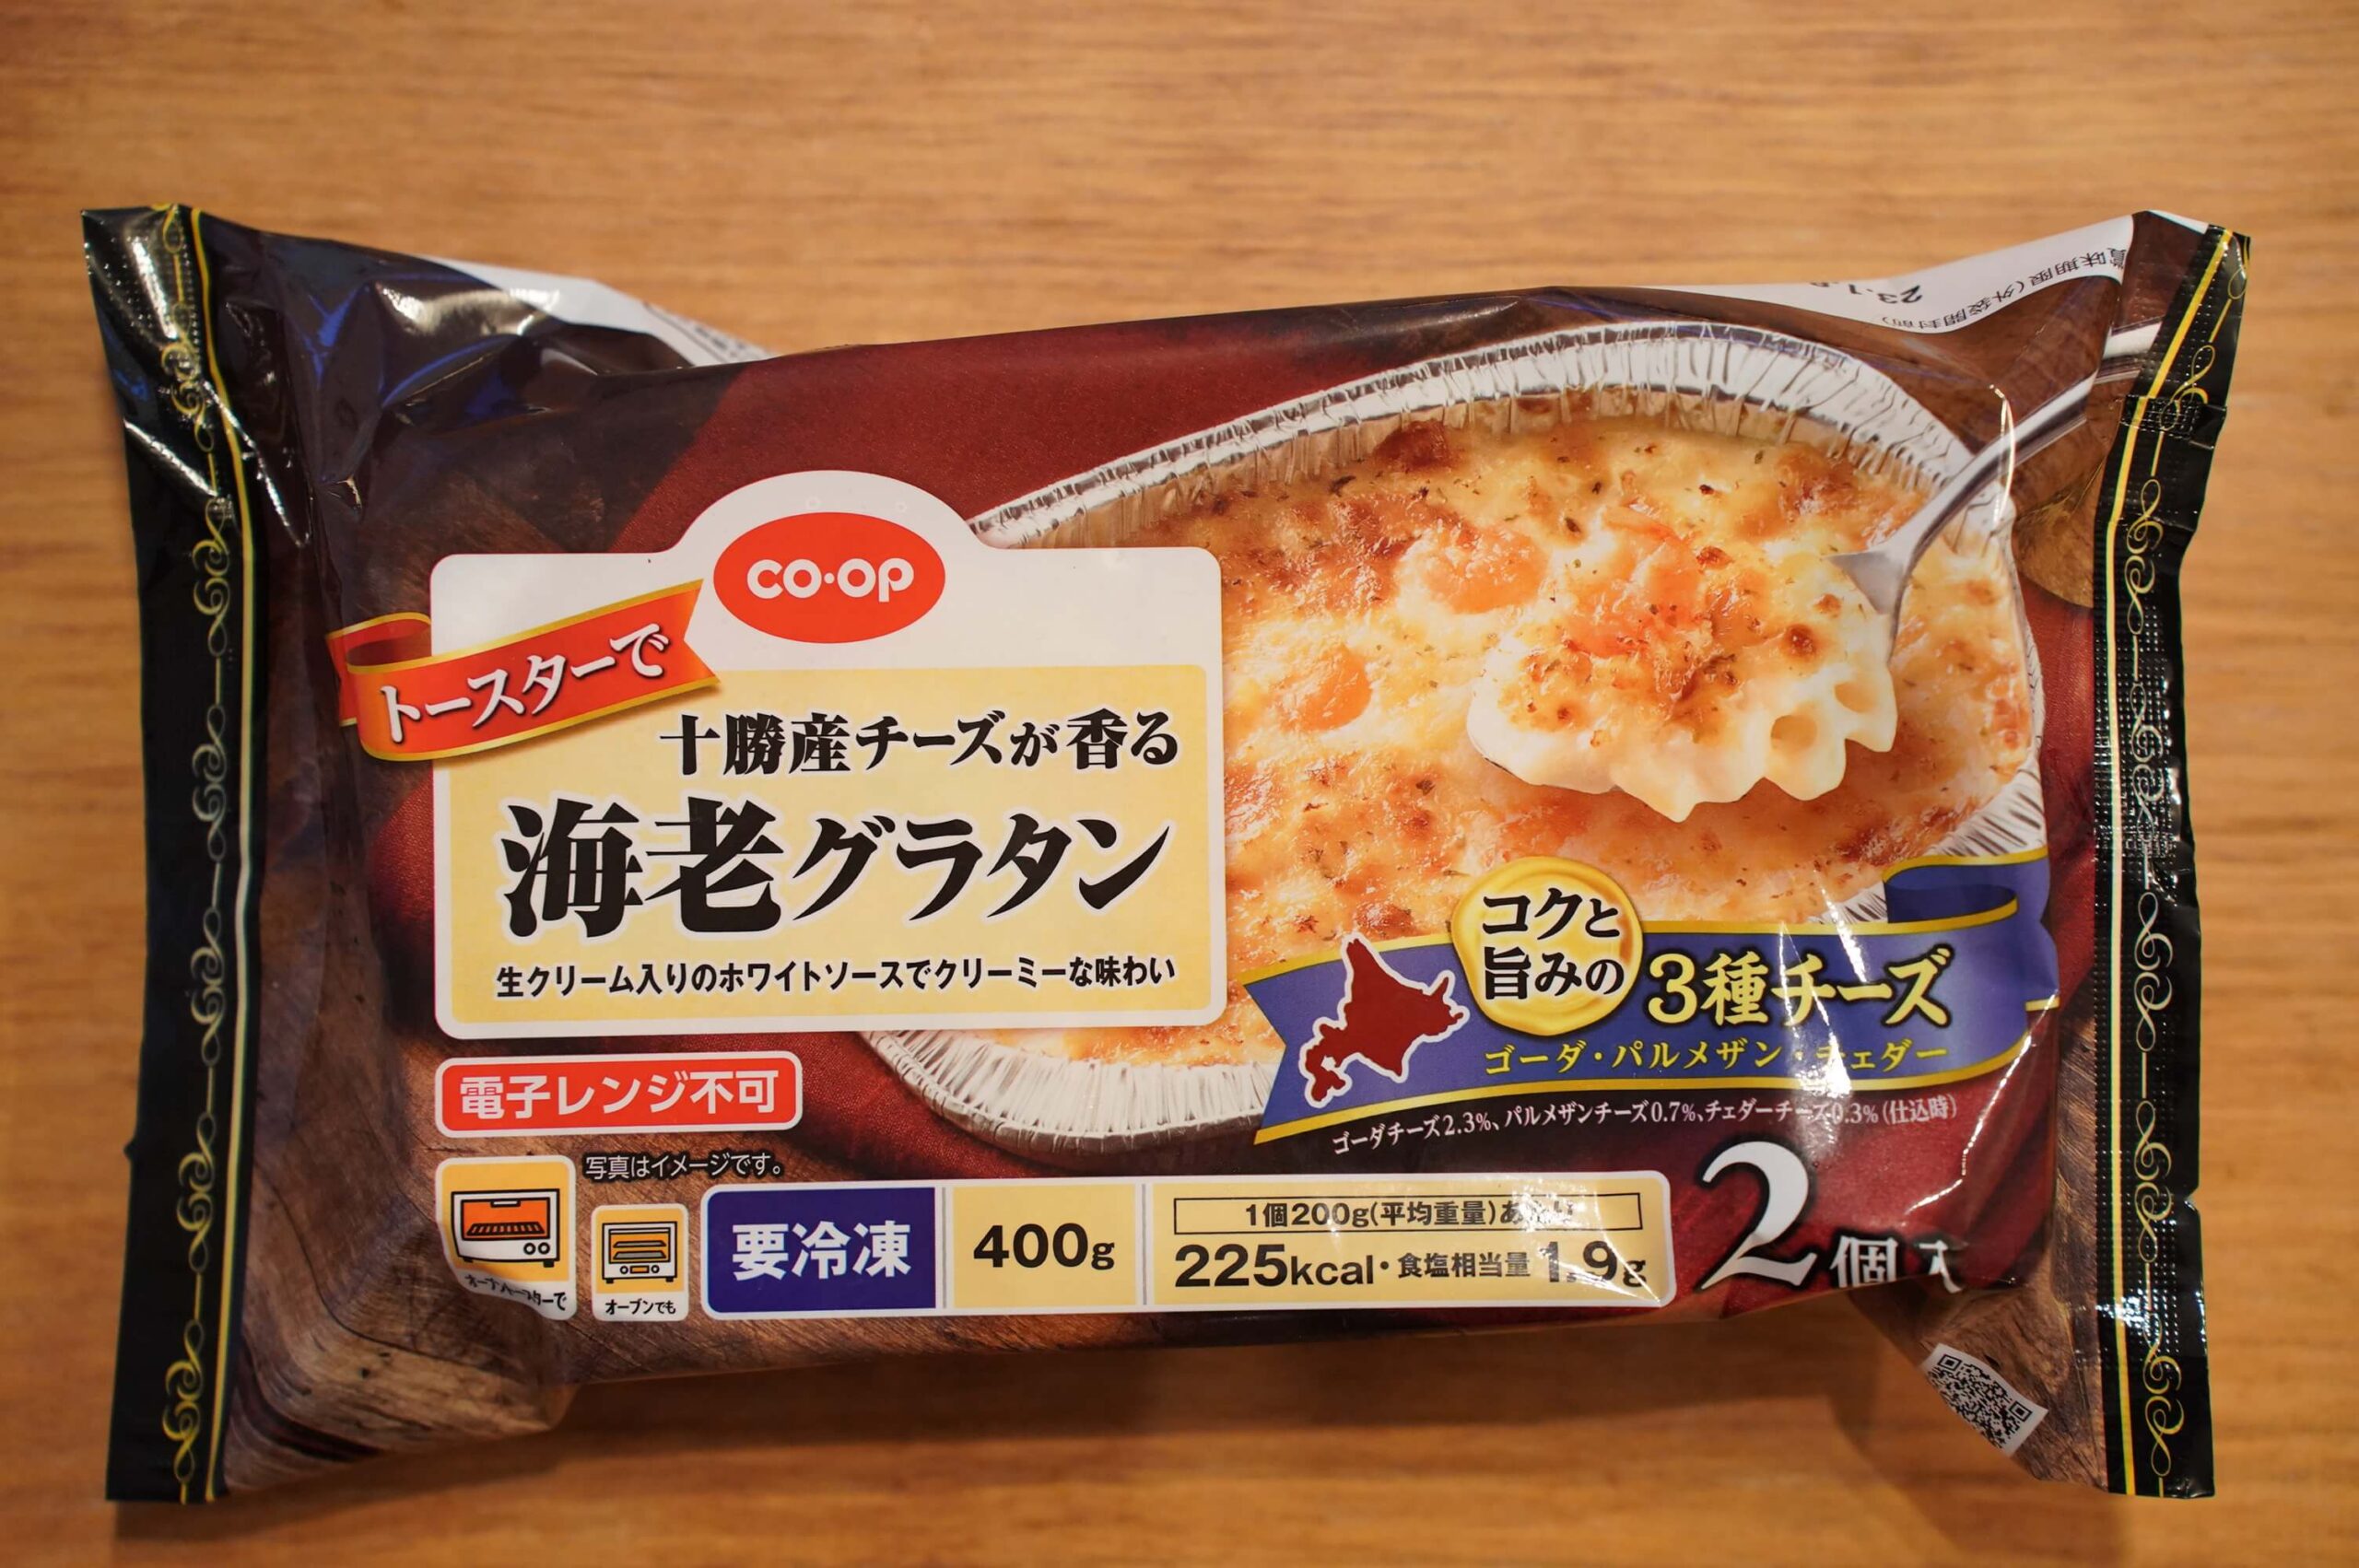 コープきんきのお試しセット「十勝産チーズが香る海老グラタン」のパッケージ写真